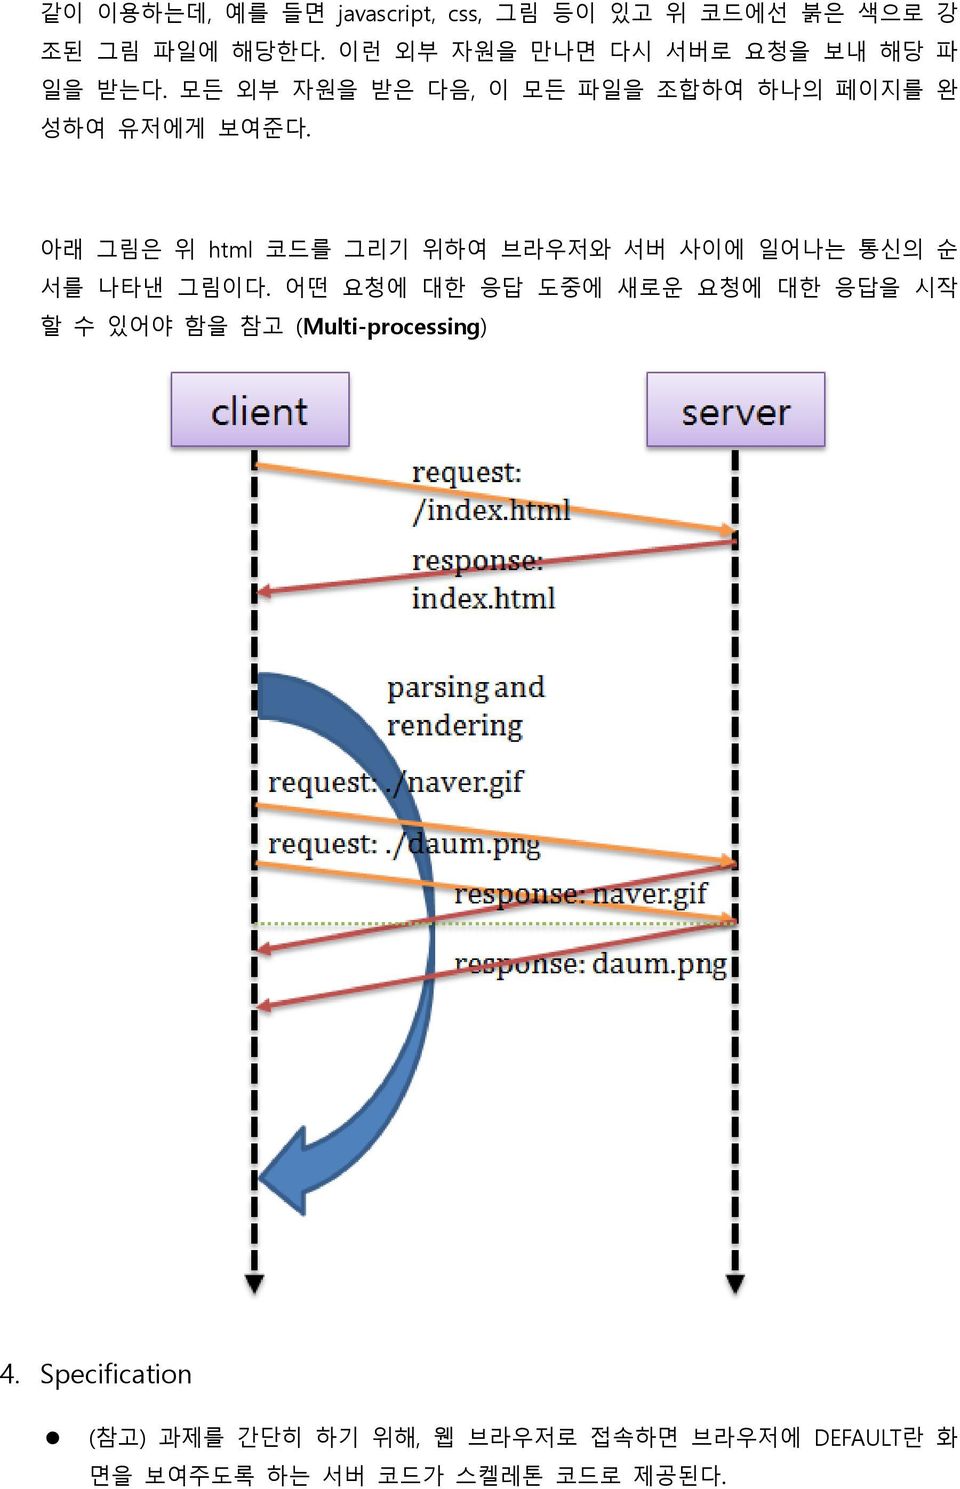 아래 그림은 위 html 코드를 그리기 위하여 브라우저와 서버 사이에 일어나는 통신의 순 서를 나타낸 그림이다.